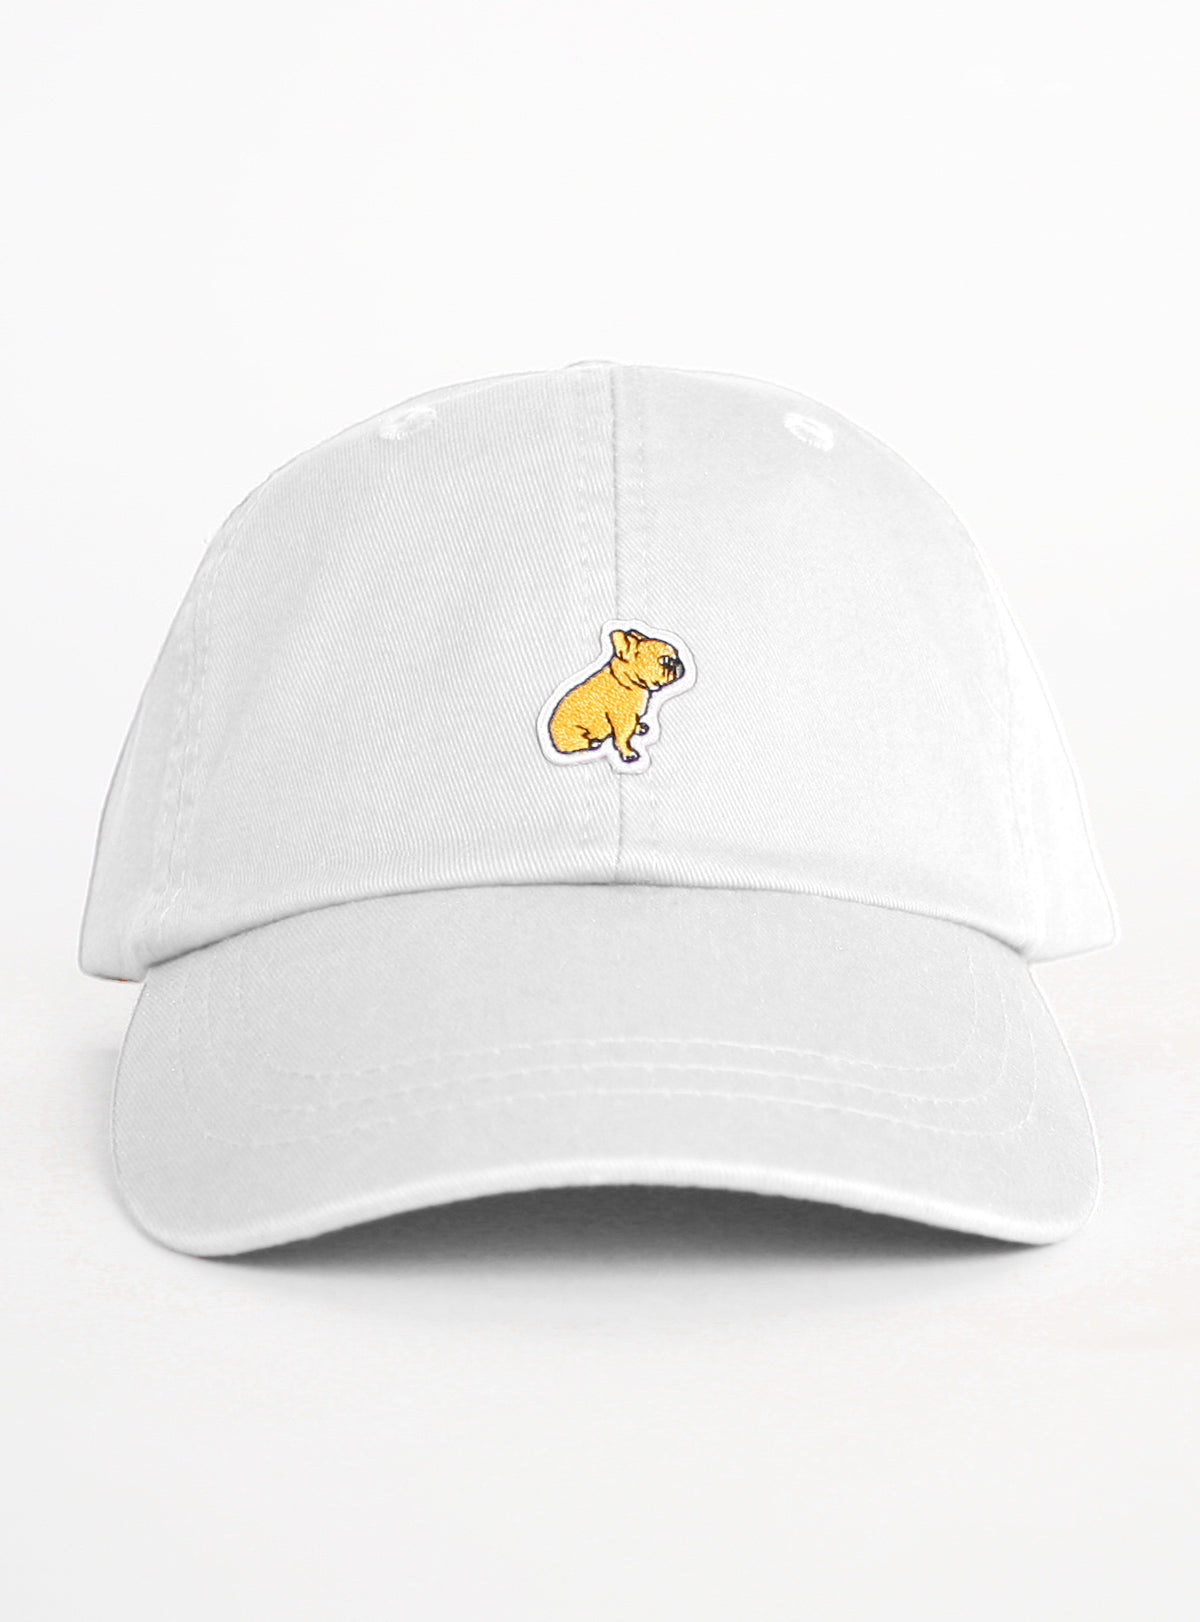 Chicken Nugget Dad Hat